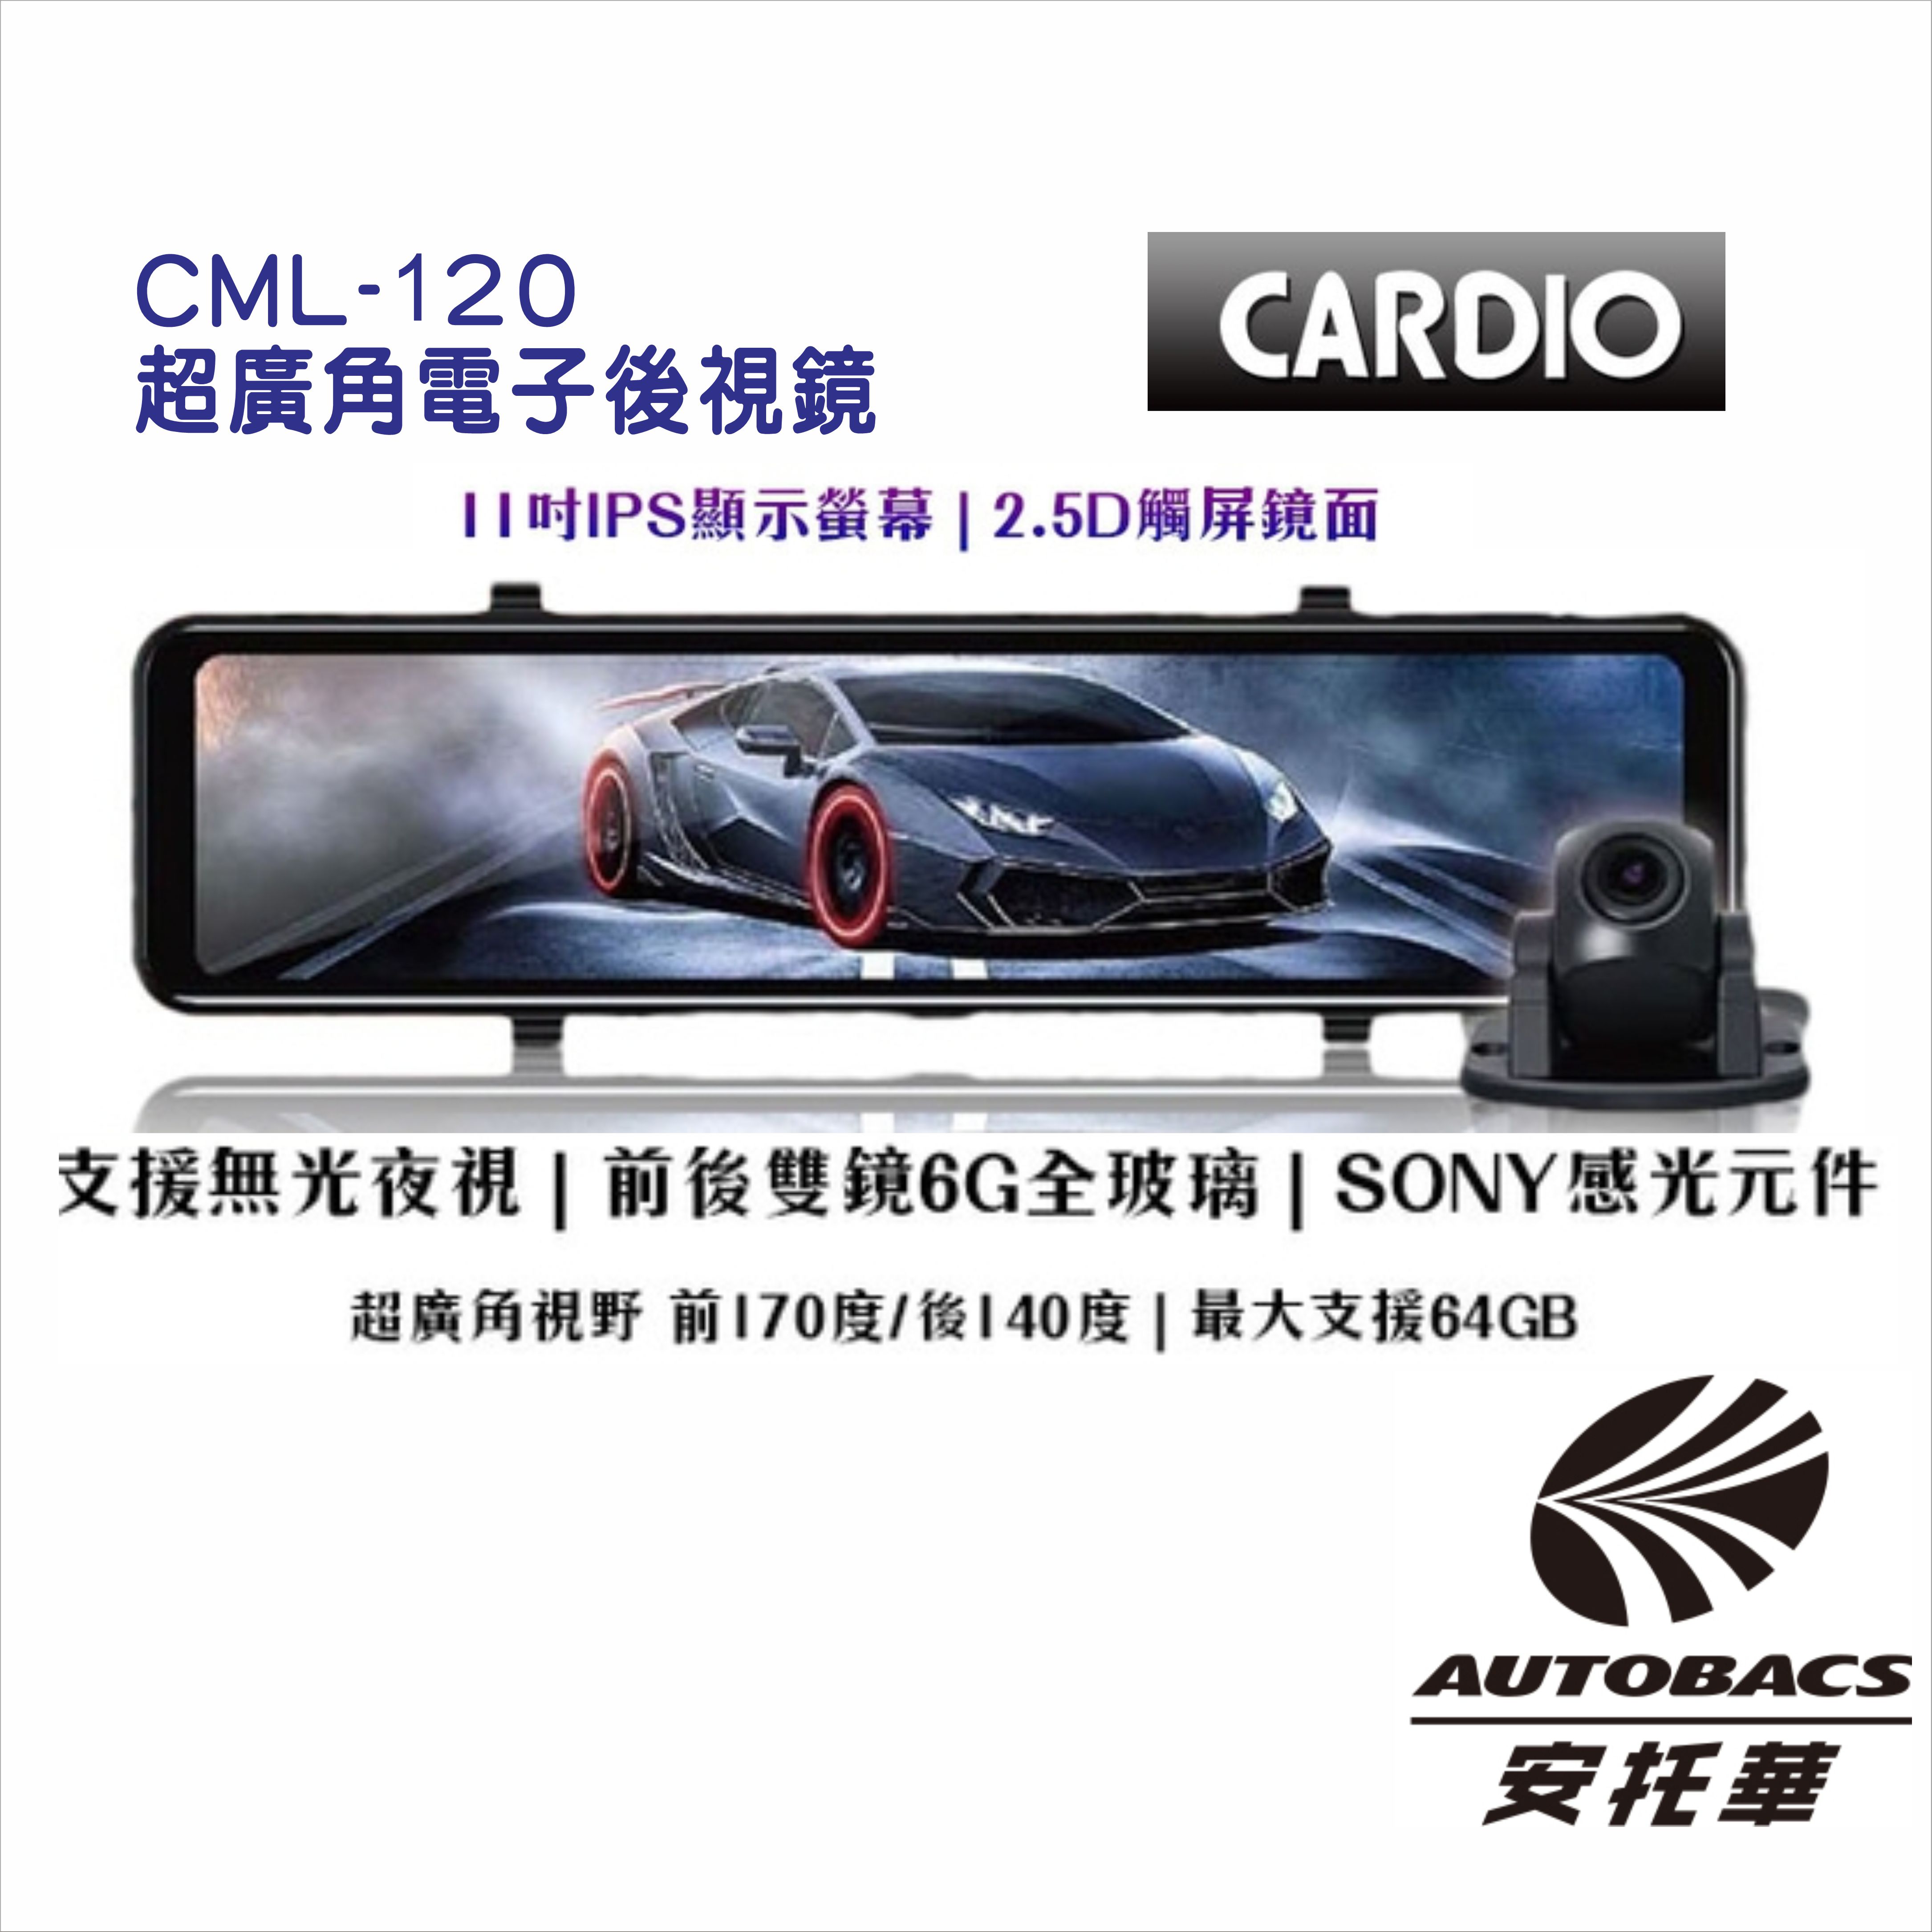 【CARDIO】CML-120S 超廣角電子後視鏡 前後行車紀錄器 1080P/SONY感光元件/支援無光夜視/內建測速【此賣場為含裝賣場，歐系車安裝費用會另計算，請先私訊】